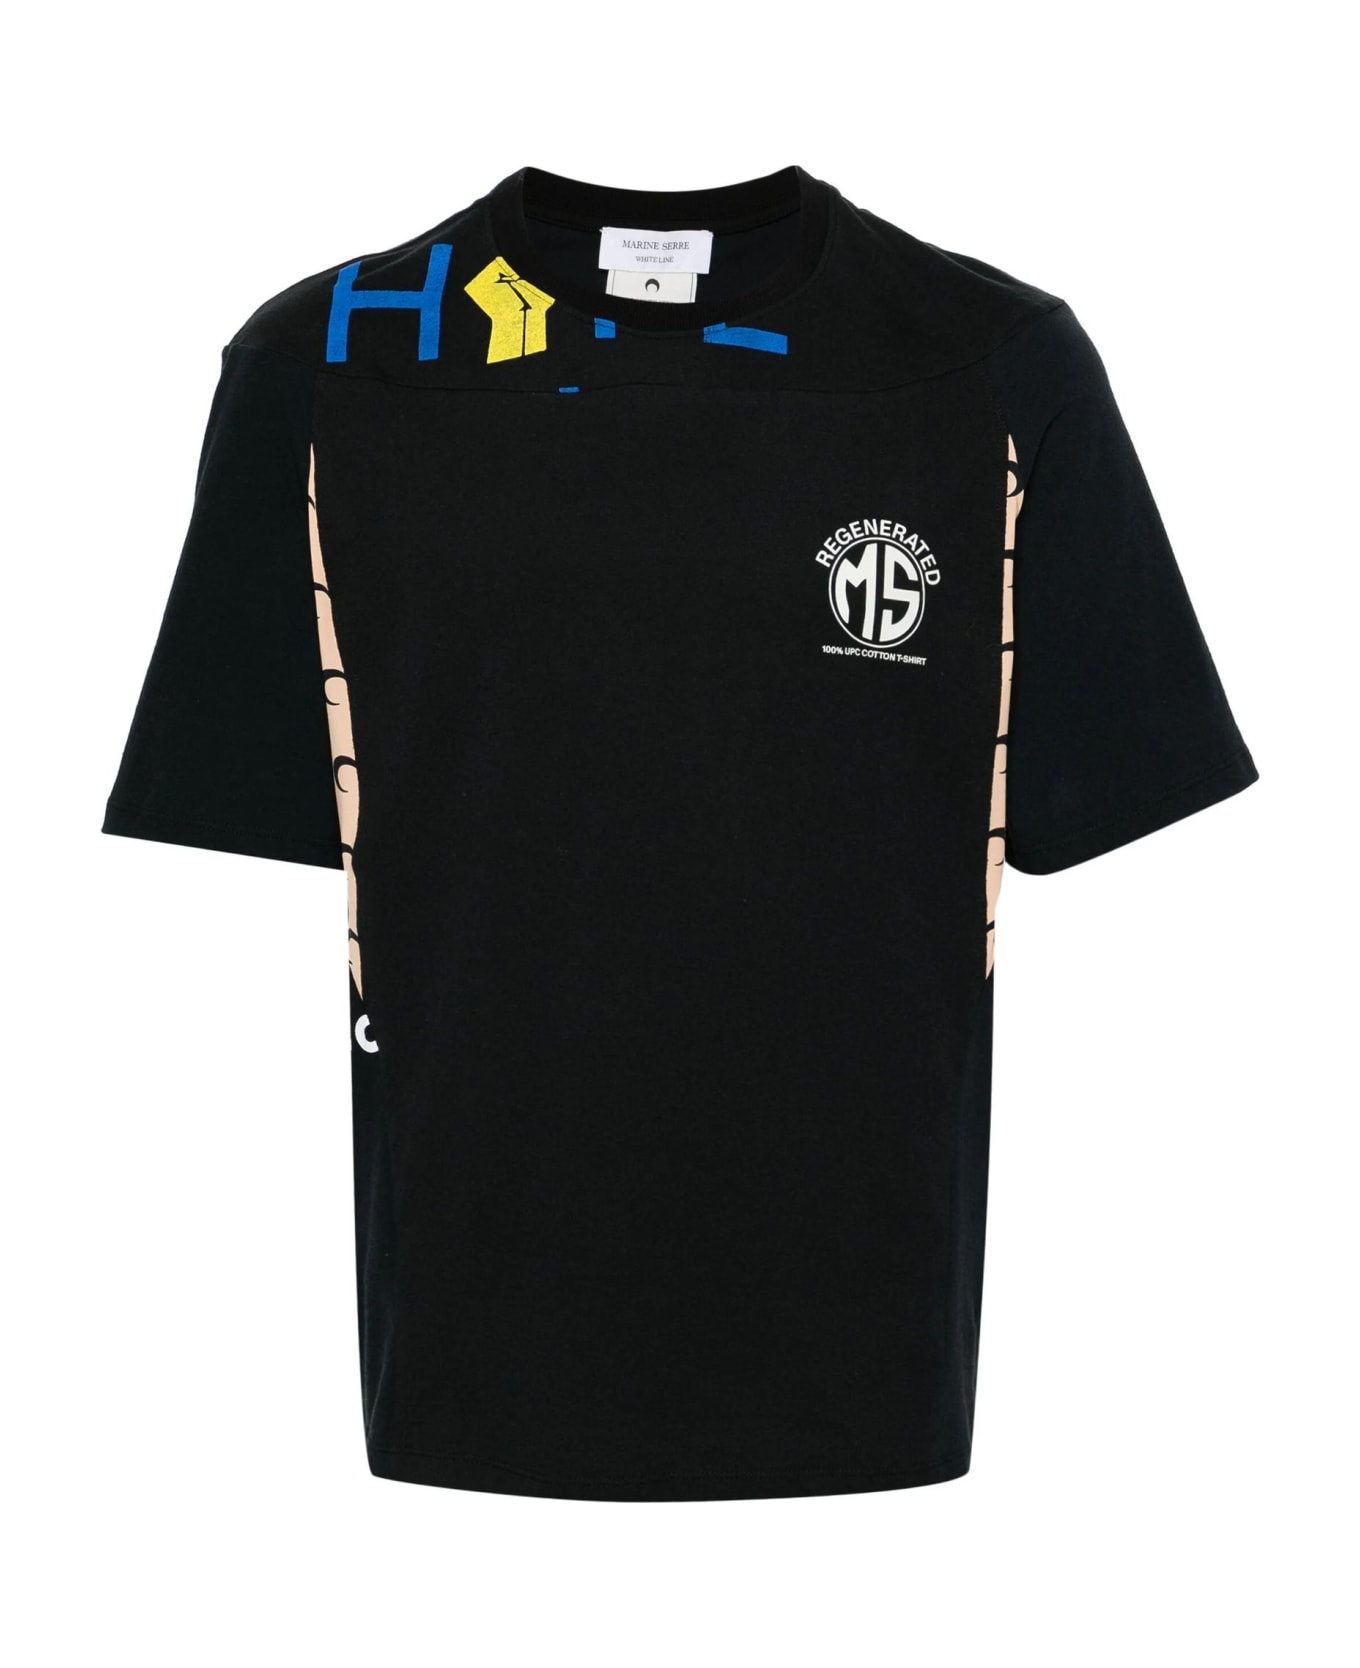 Marine Serre T-shirts And Polos Black - Black シャツ